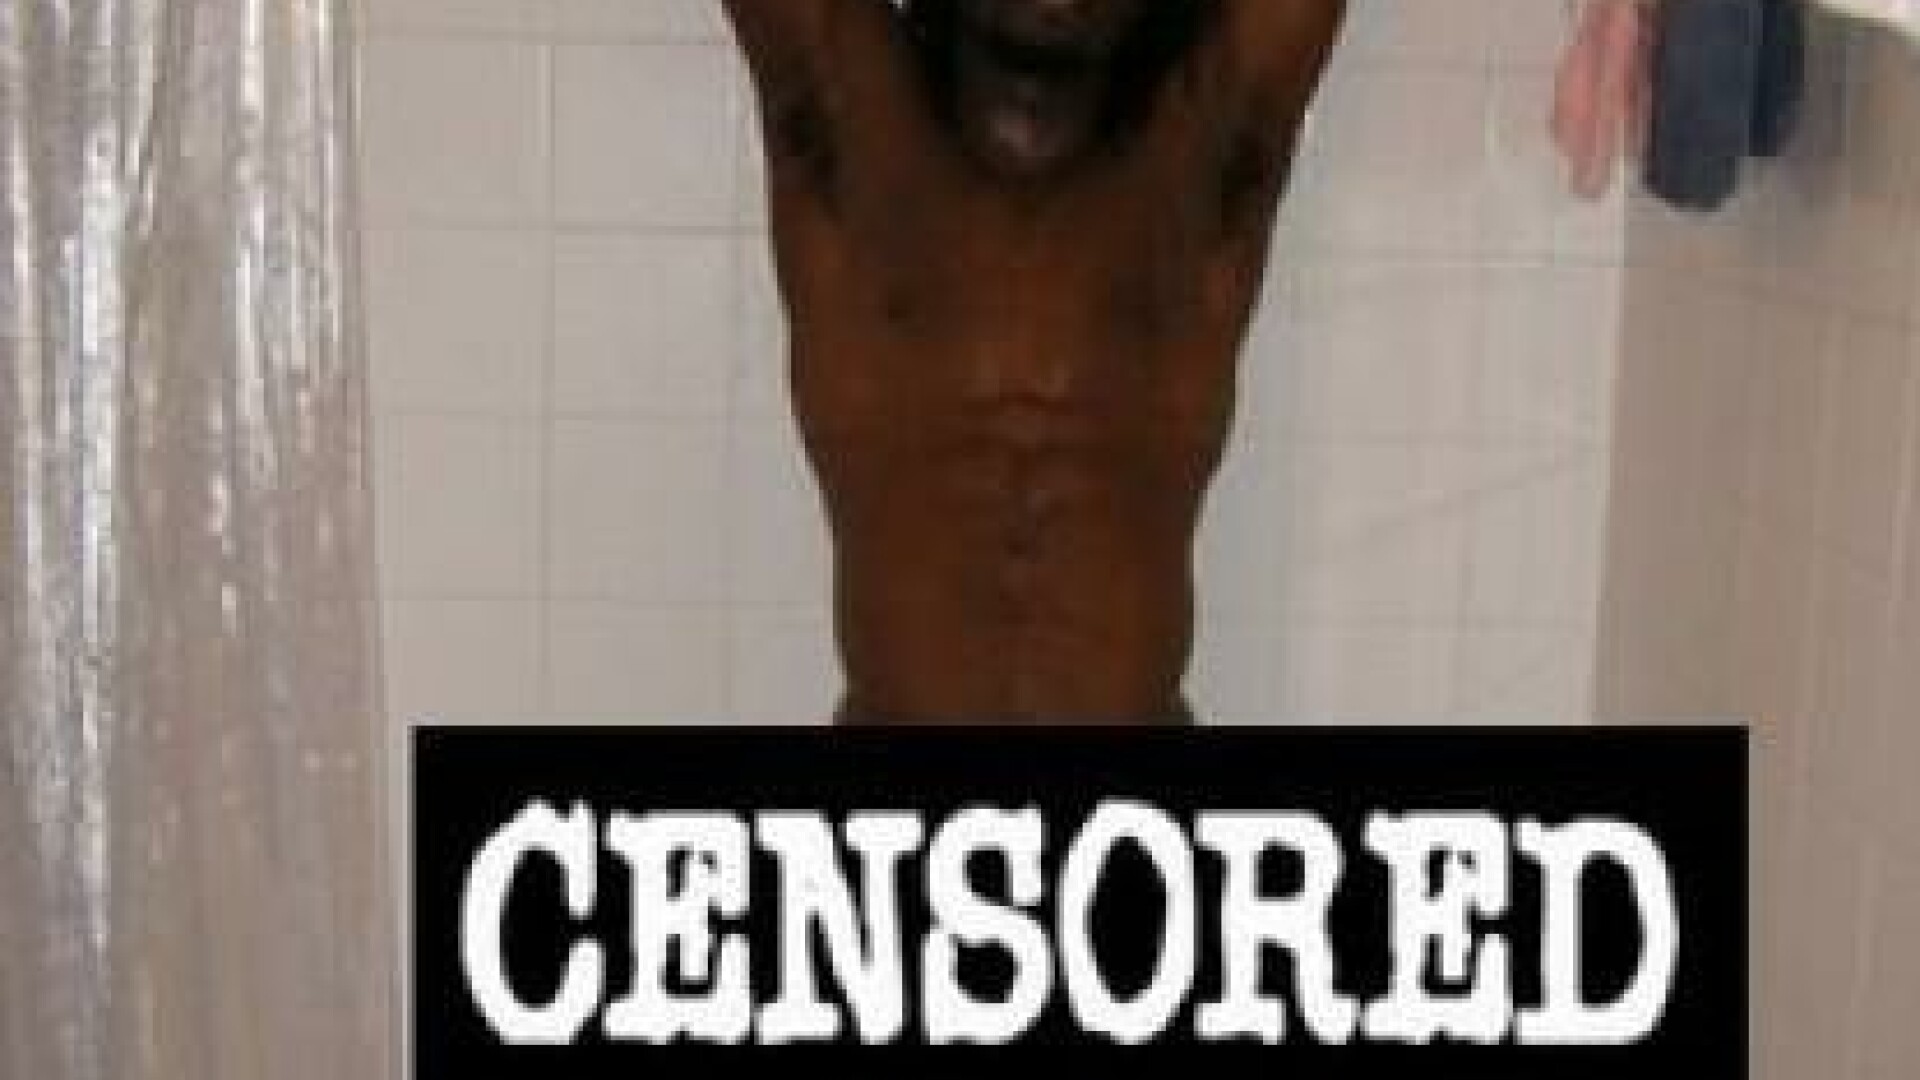 Cenzurat